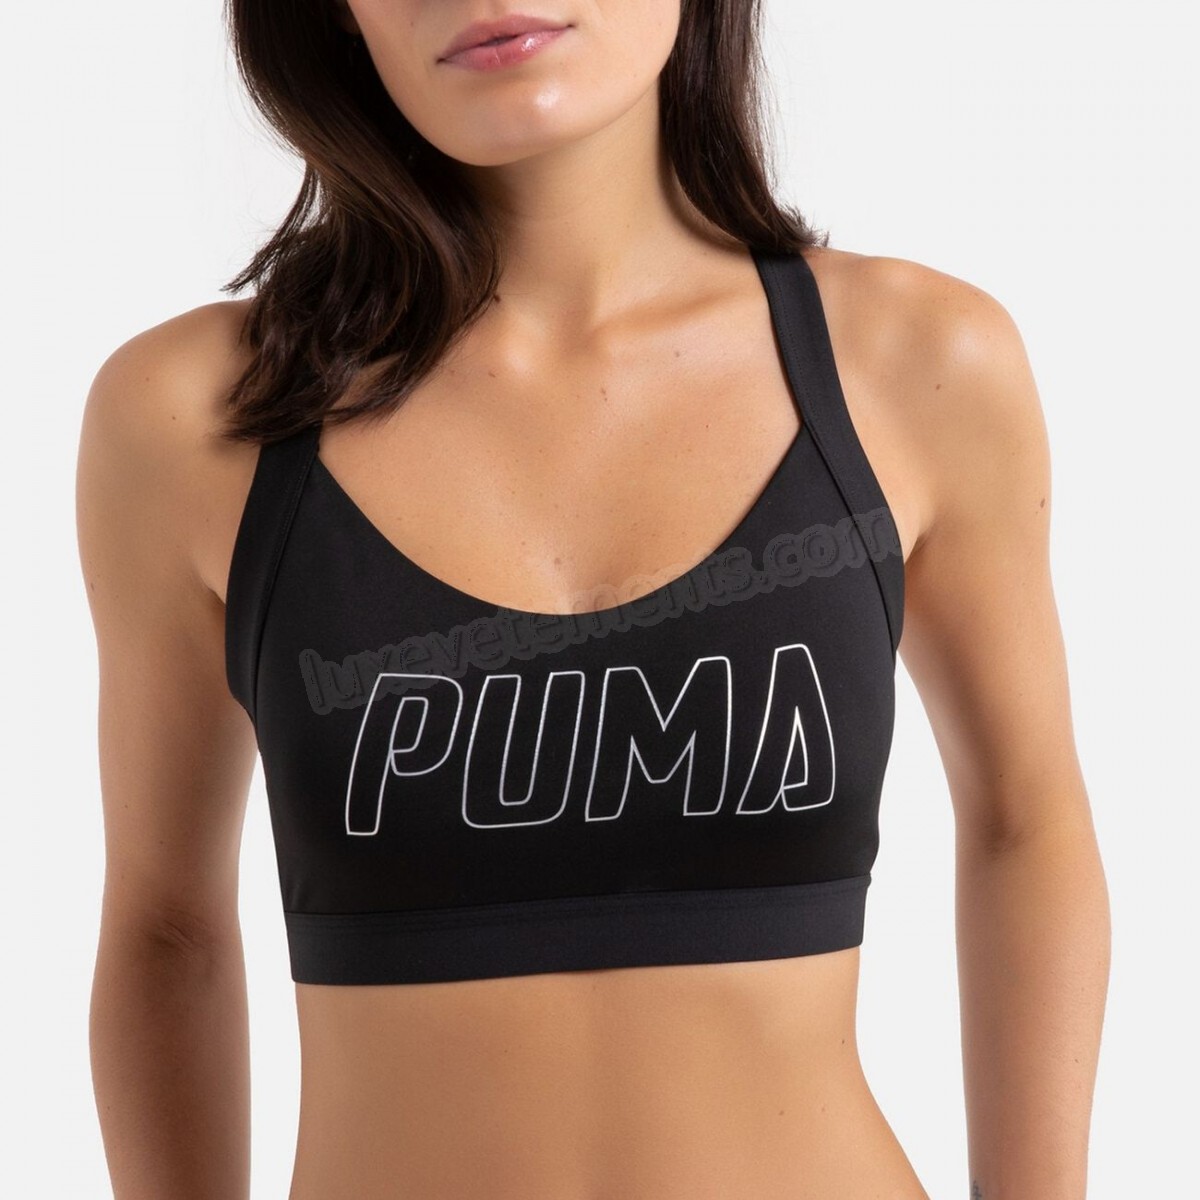 Puma-Fitness femme PUMA Brassière femme Puma train Vente en ligne - -0